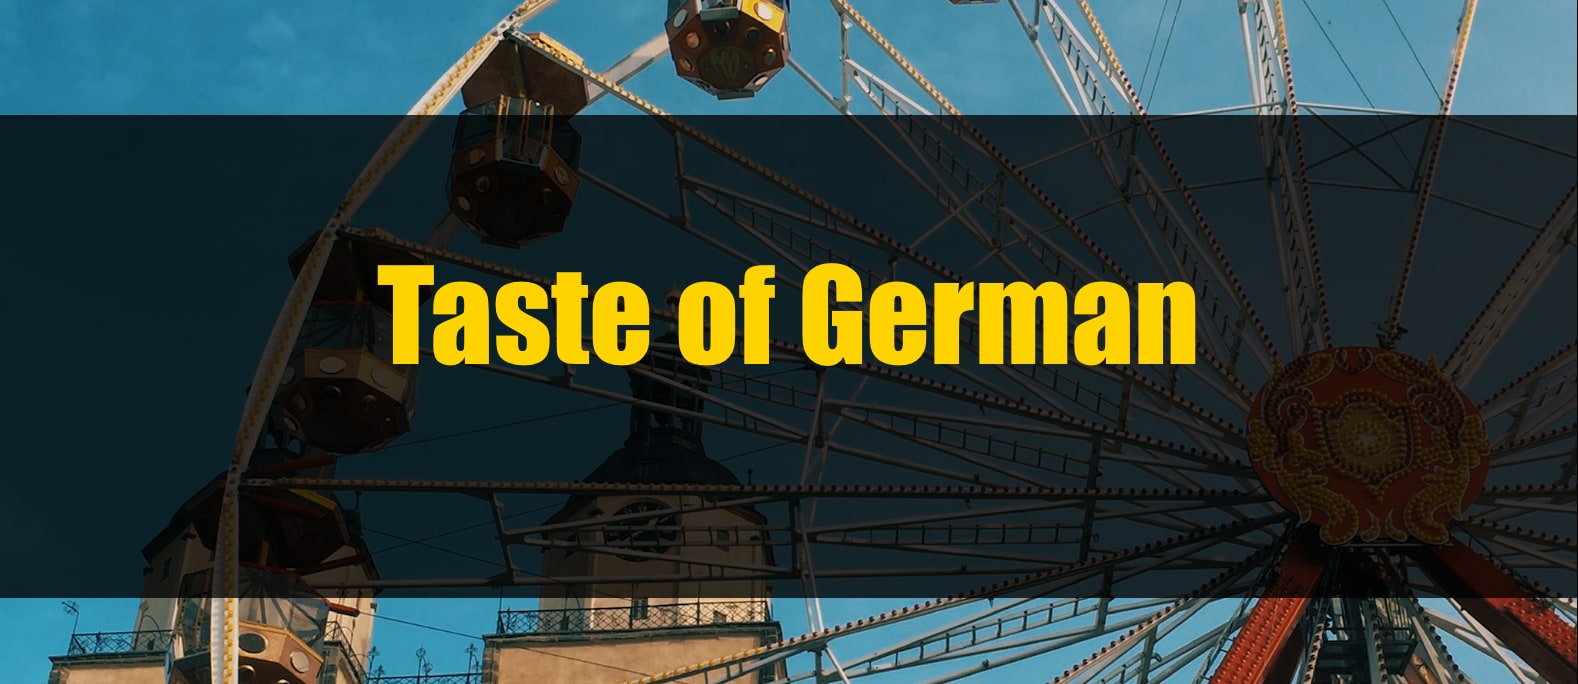 Taste of German